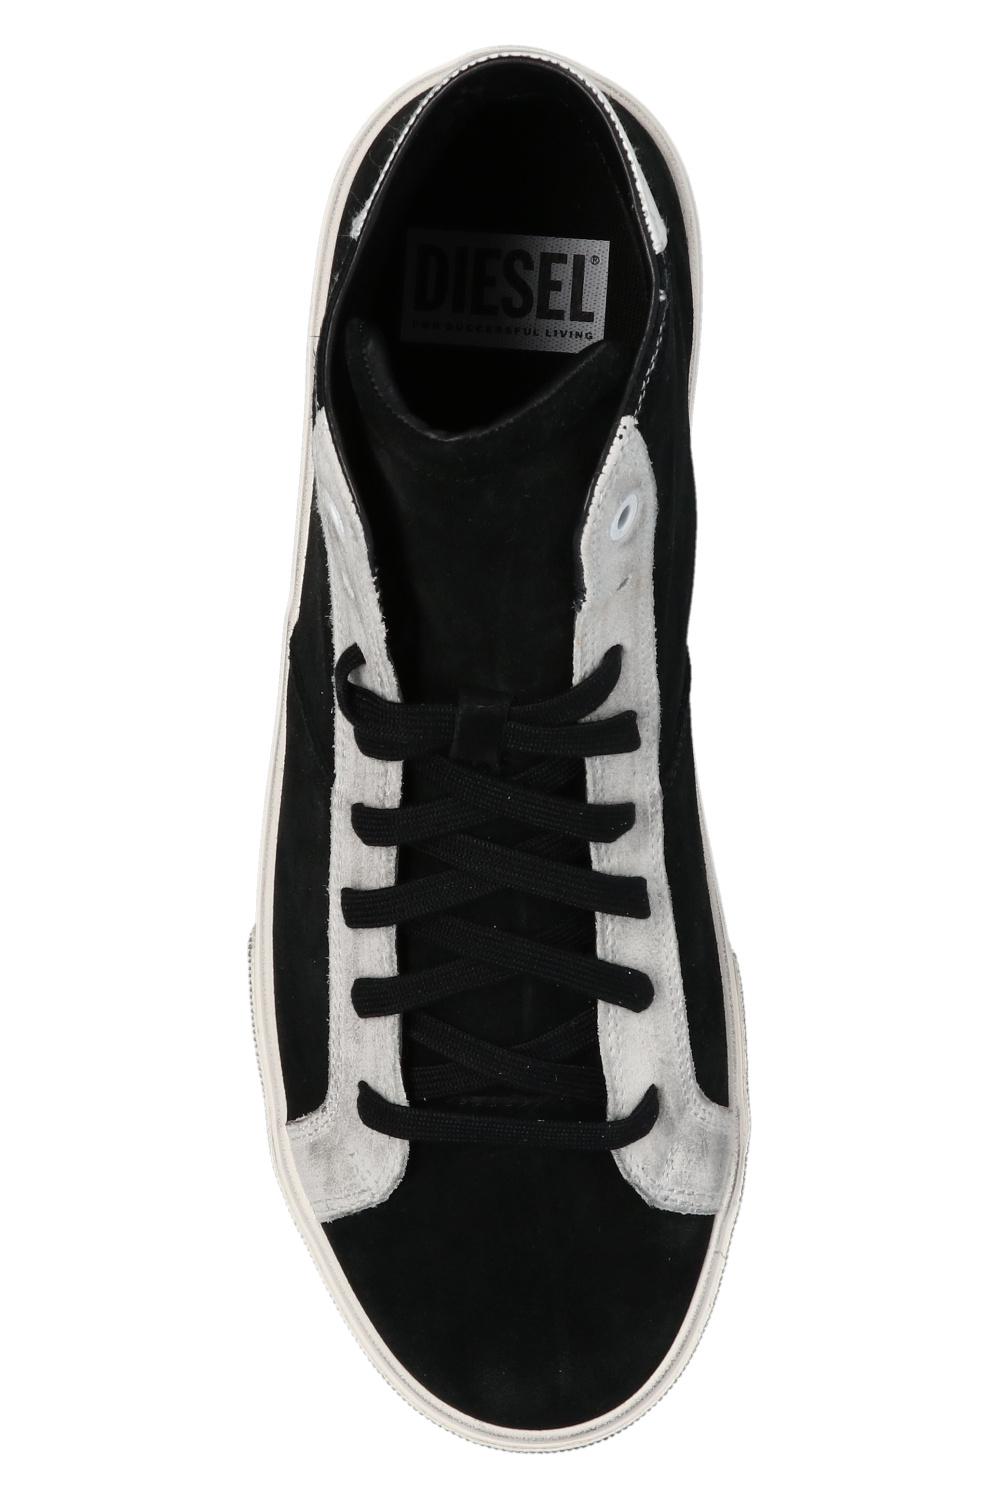 DIESEL Suede 's-mydori' Sneakers in Black for Men - Lyst